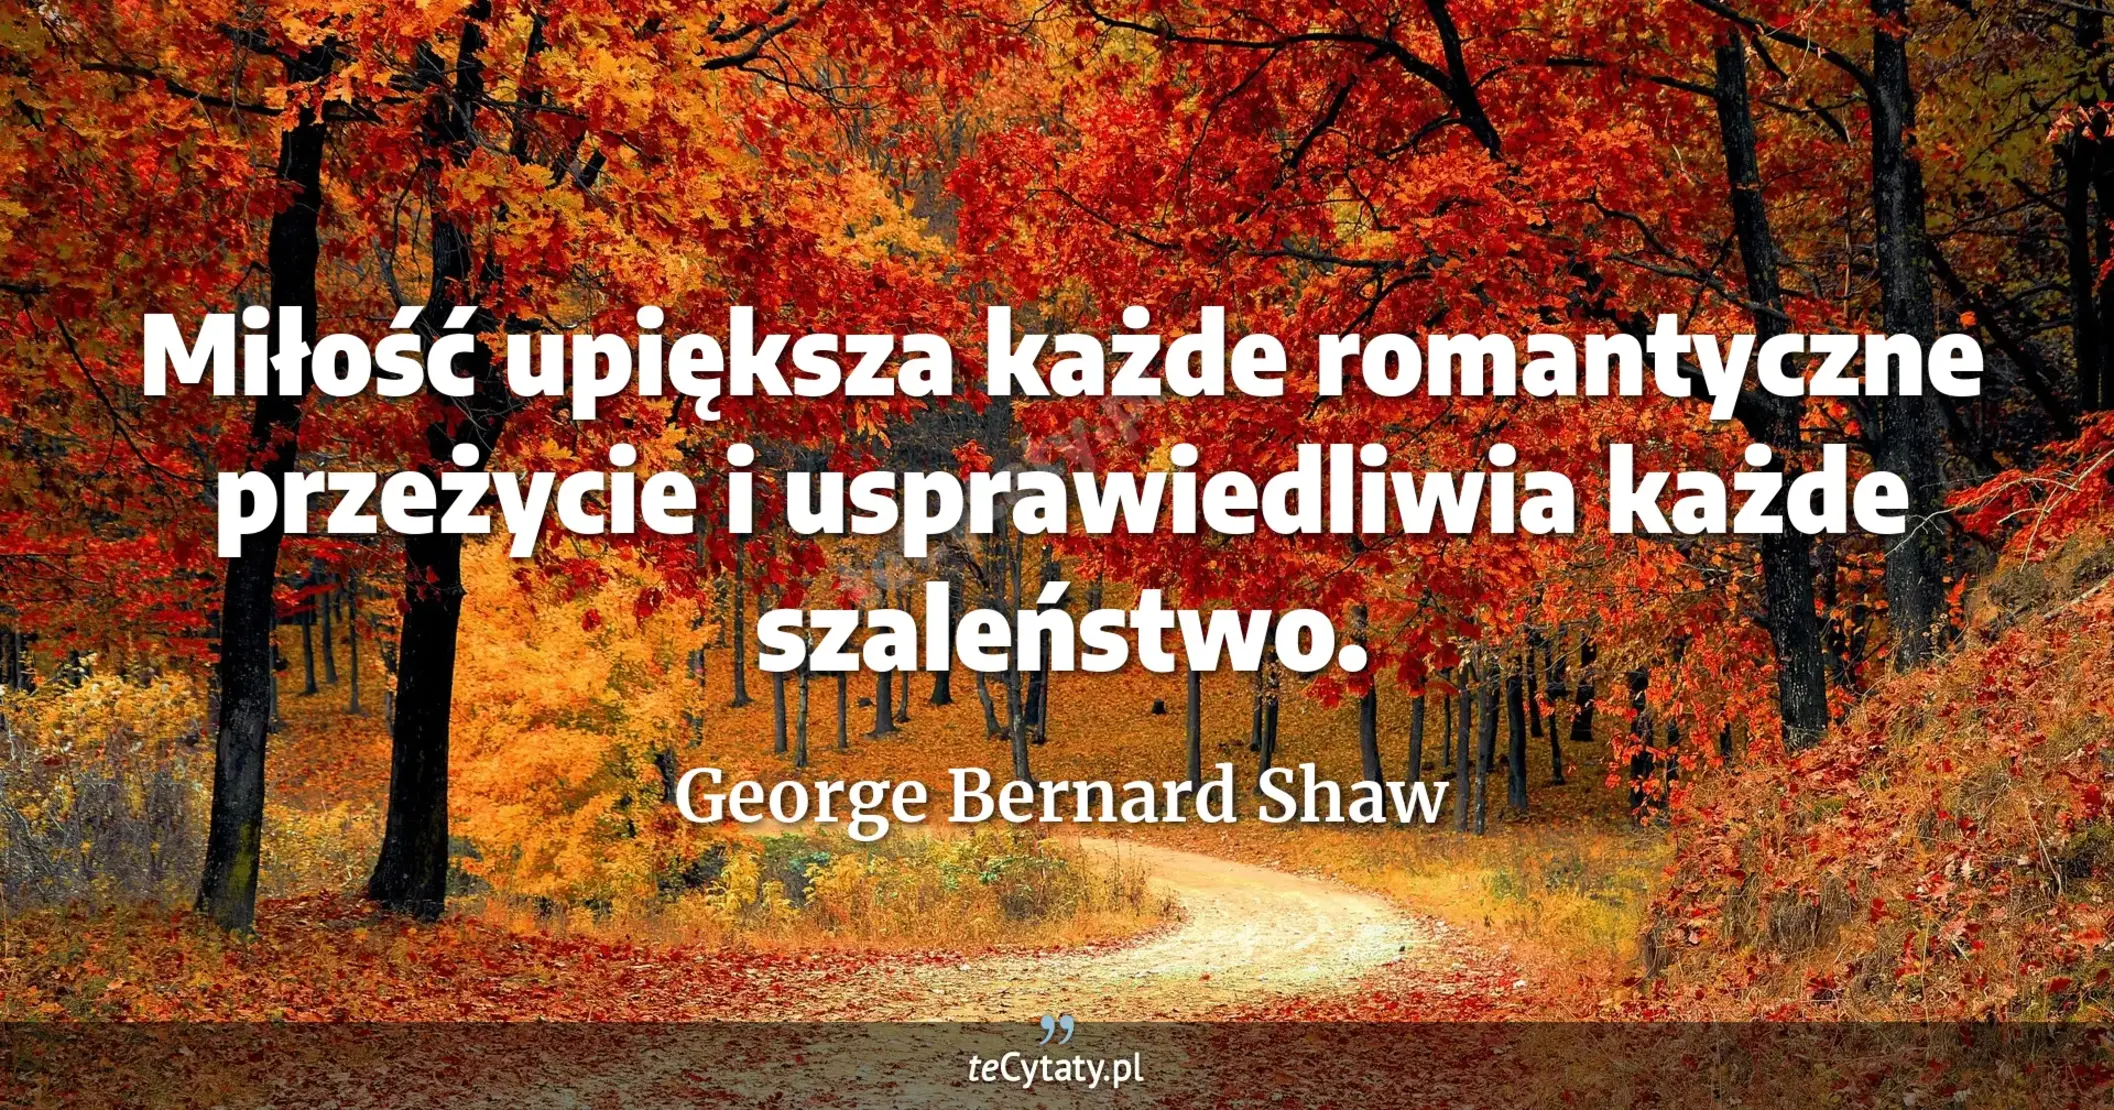 Miłość upiększa każde romantyczne przeżycie i usprawiedliwia każde szaleństwo. - George Bernard Shaw